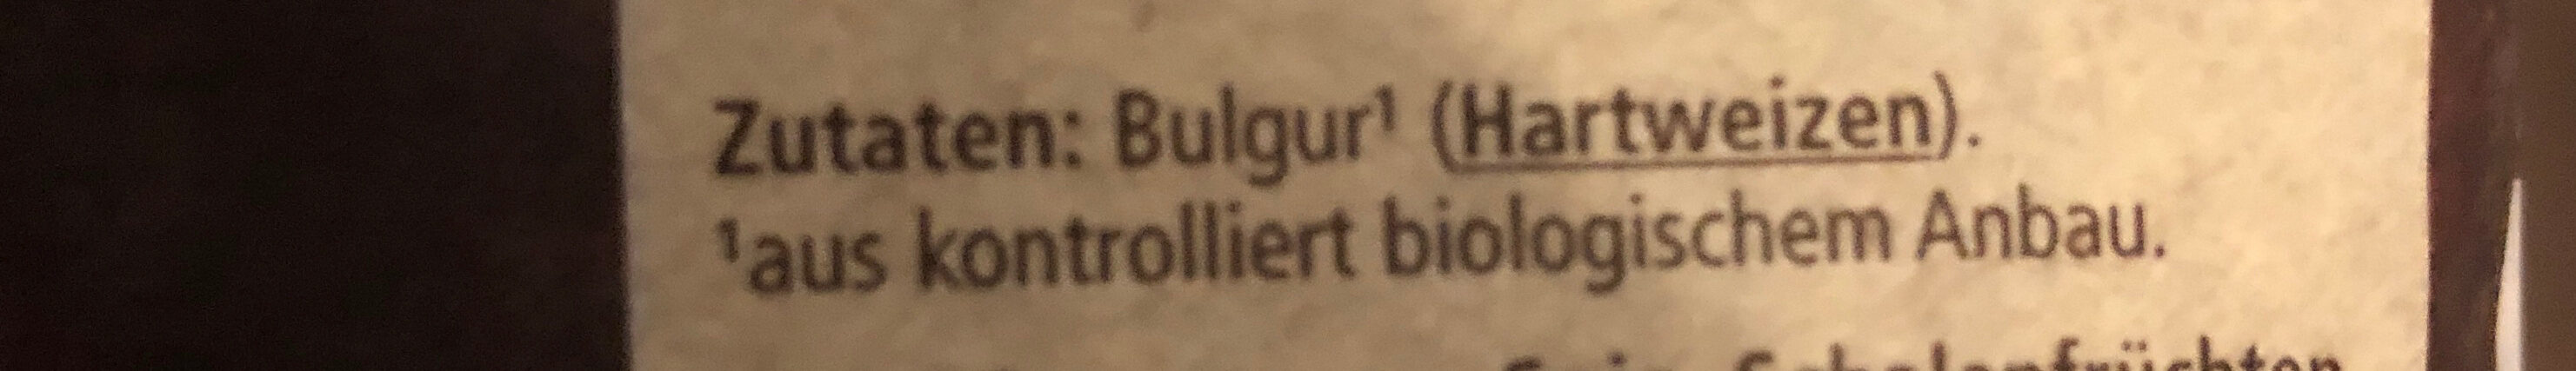 Bulgur - Zutaten